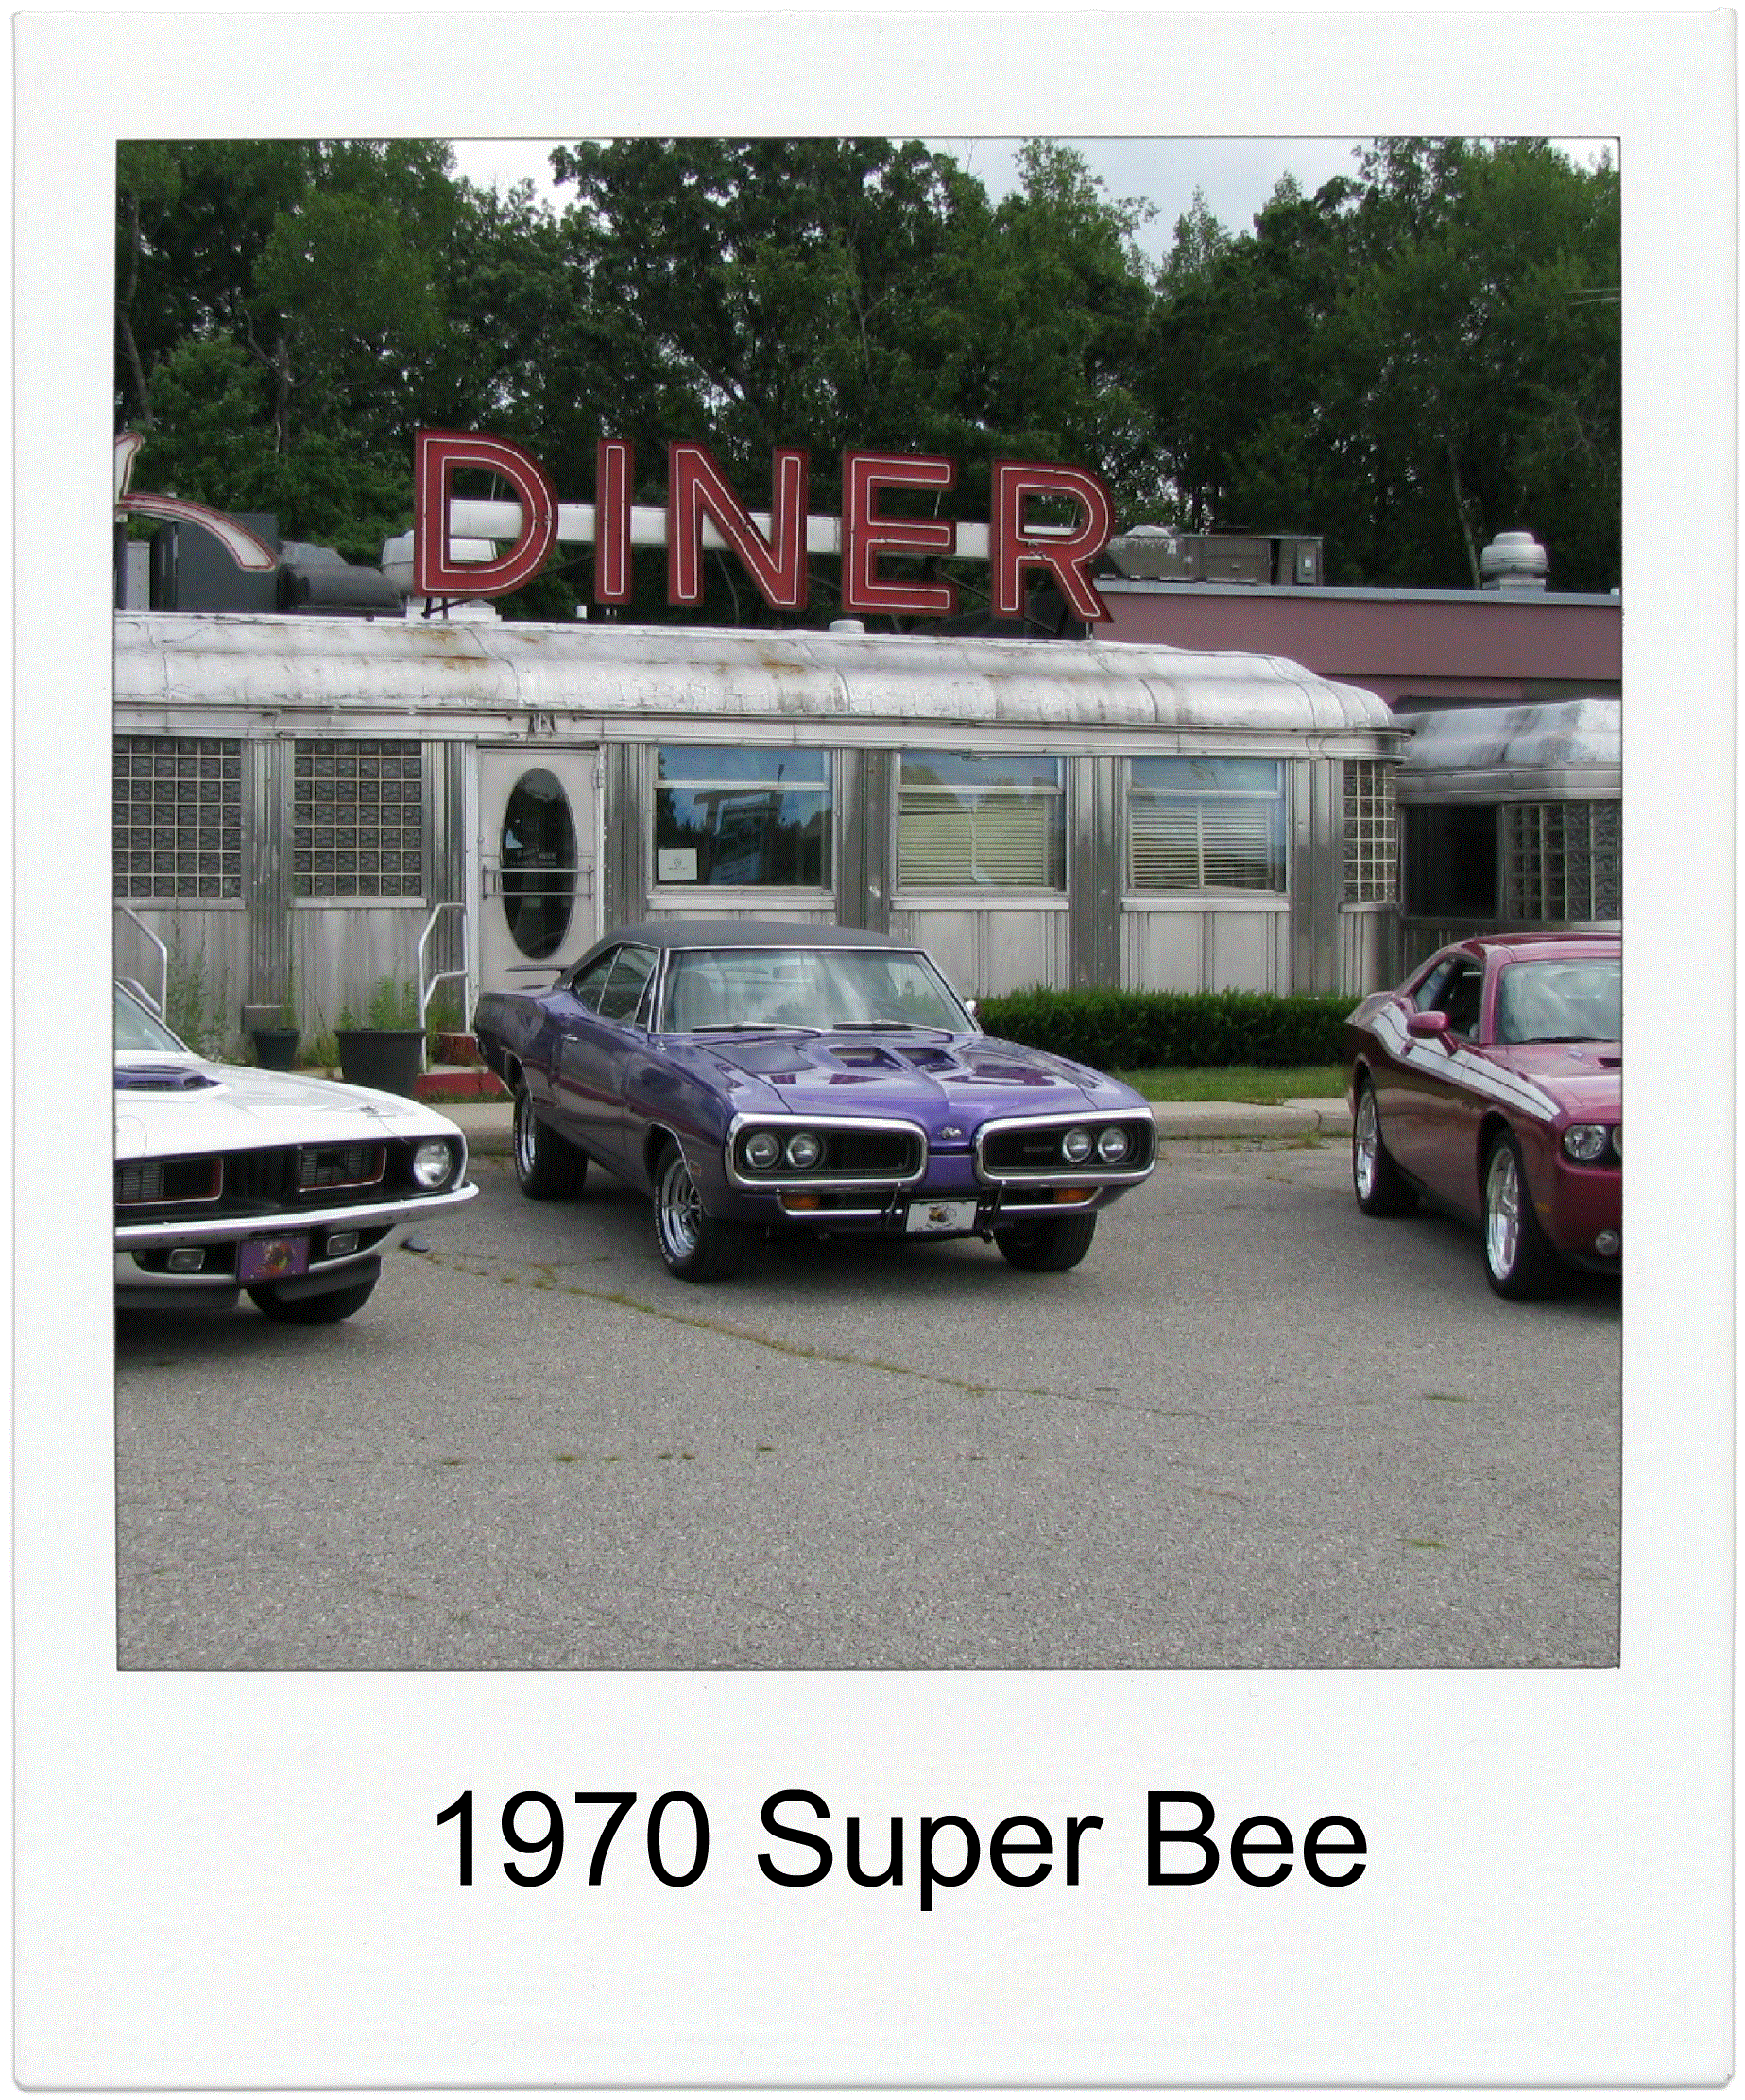 1970 Super Bee